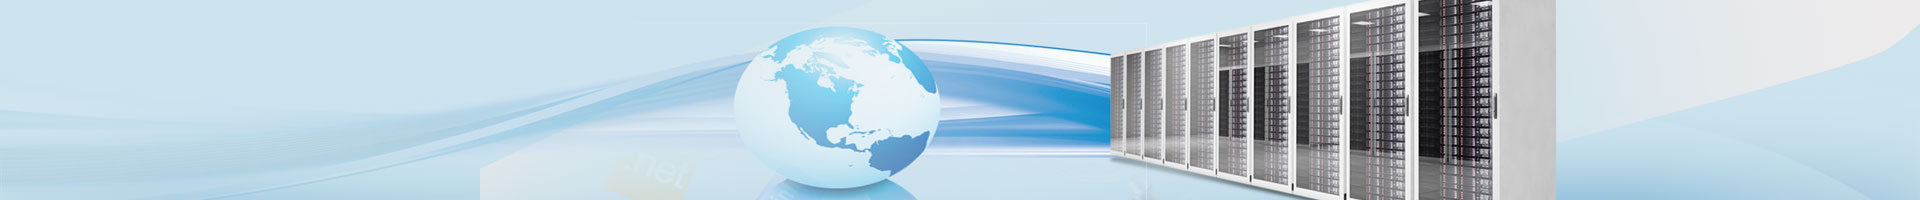 Web Hosting Services Company - Modi Infotech Services